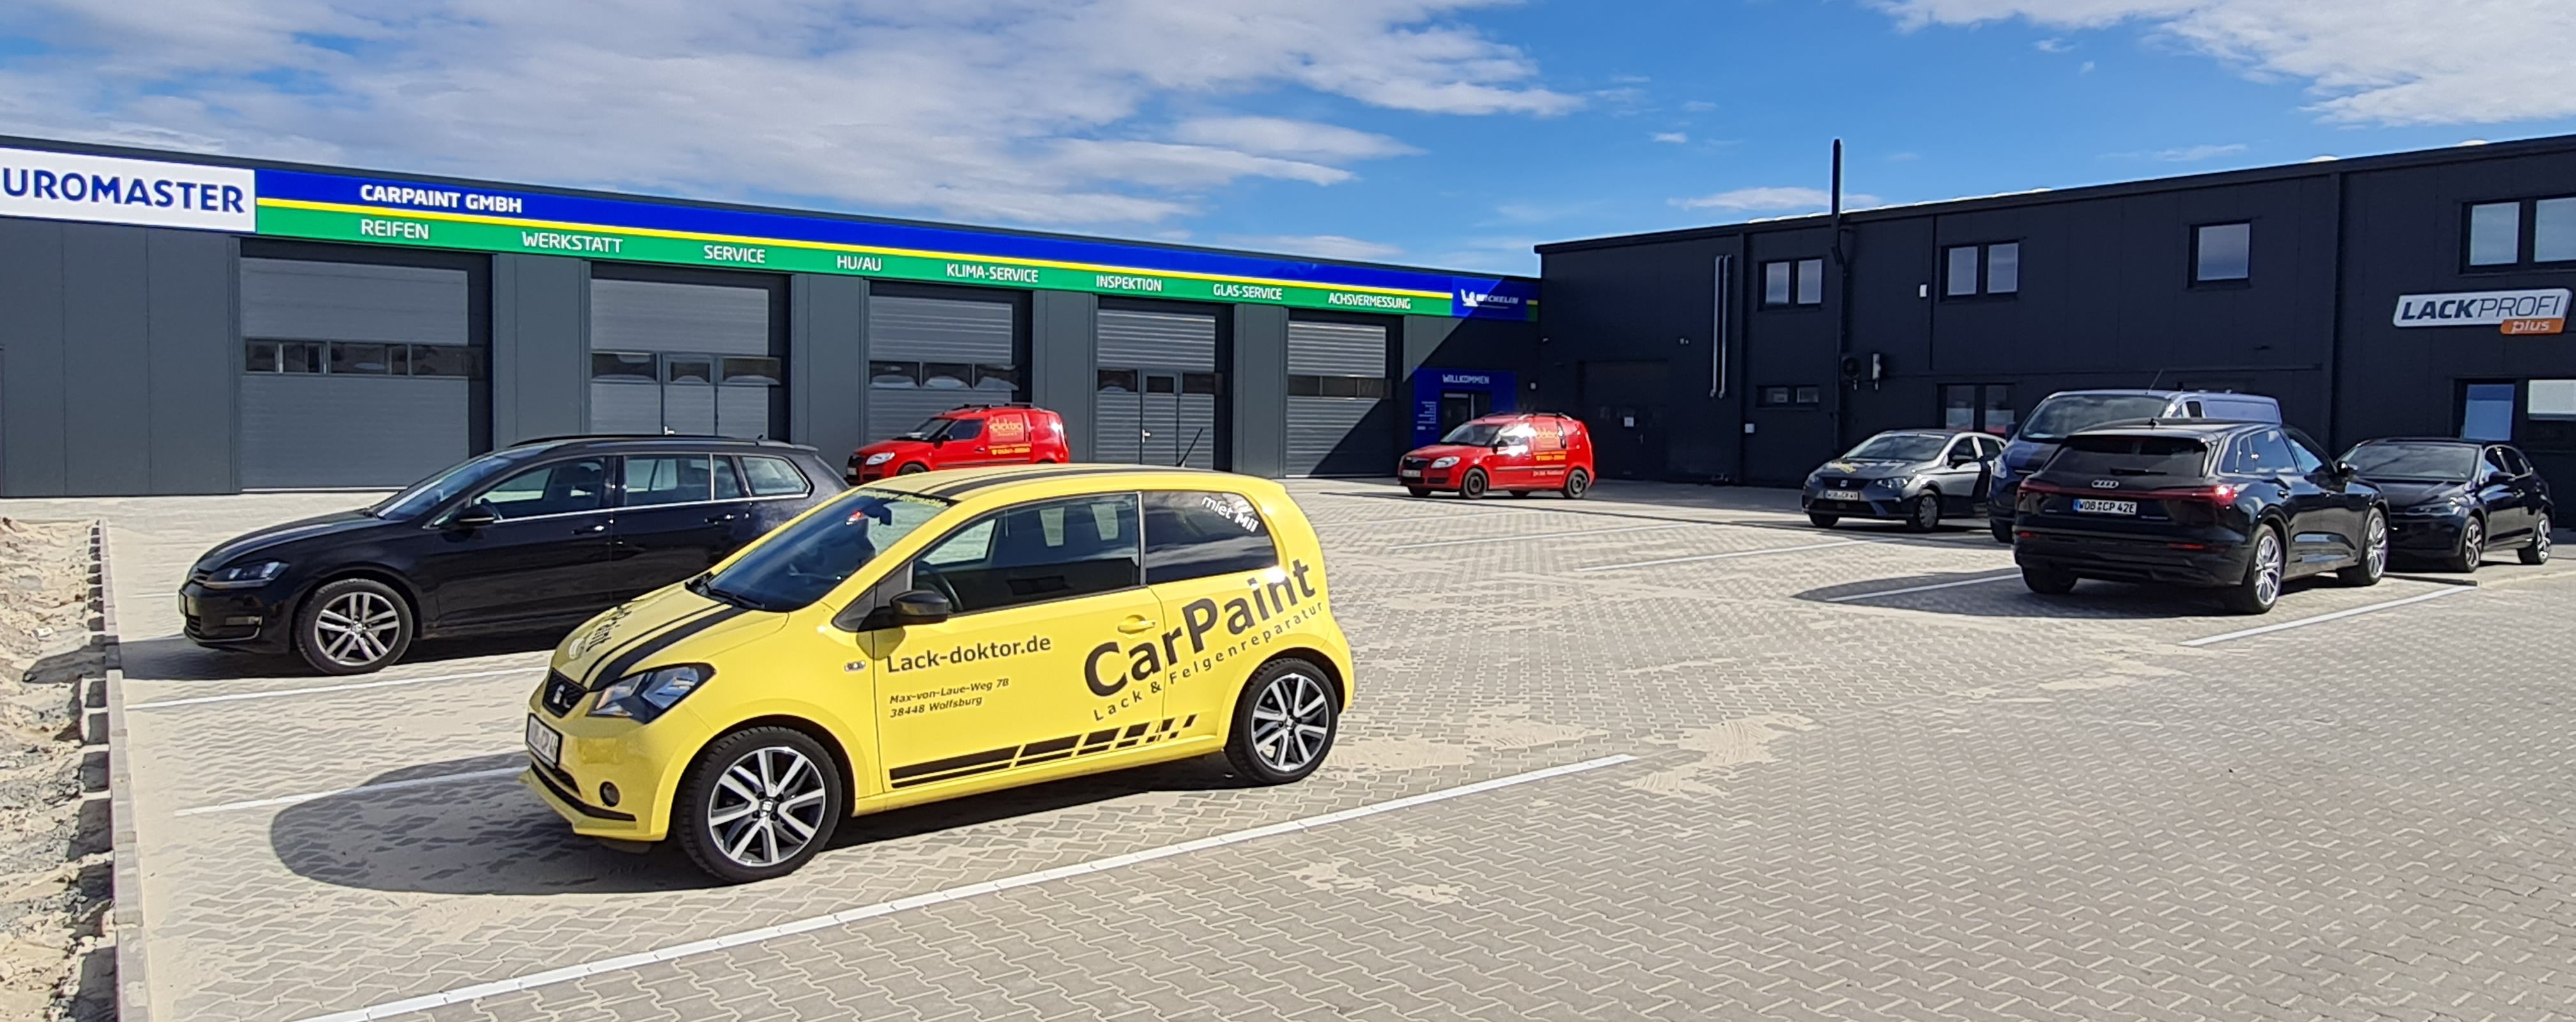 Bild 2 CarPaint GmbH in Wolfsburg